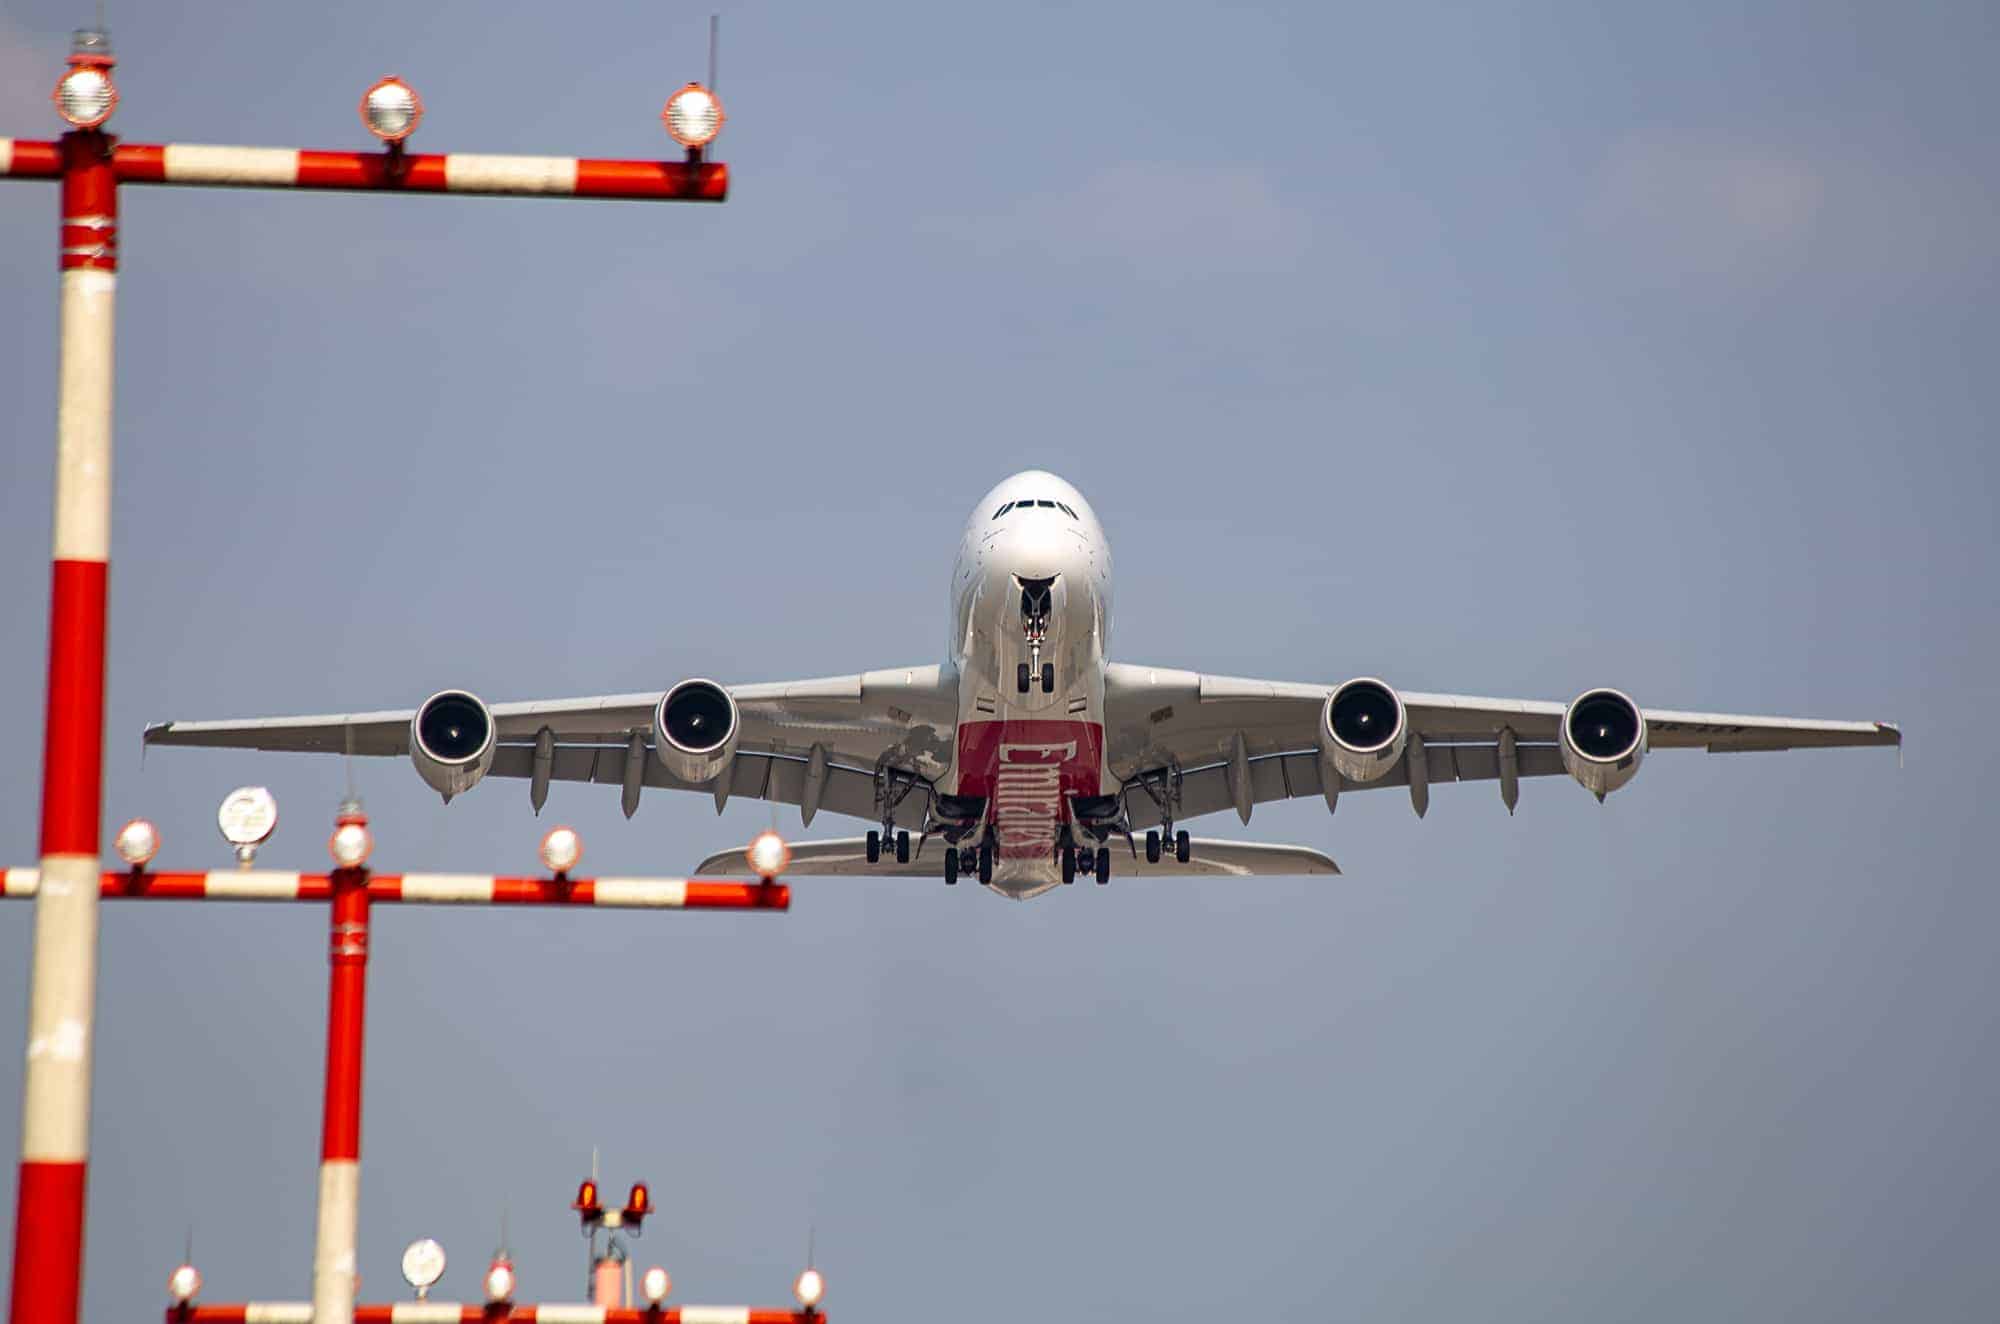 Weiß Flugzeug Von Vorne Fliegen In Der Luft Lizenzfreie Fotos